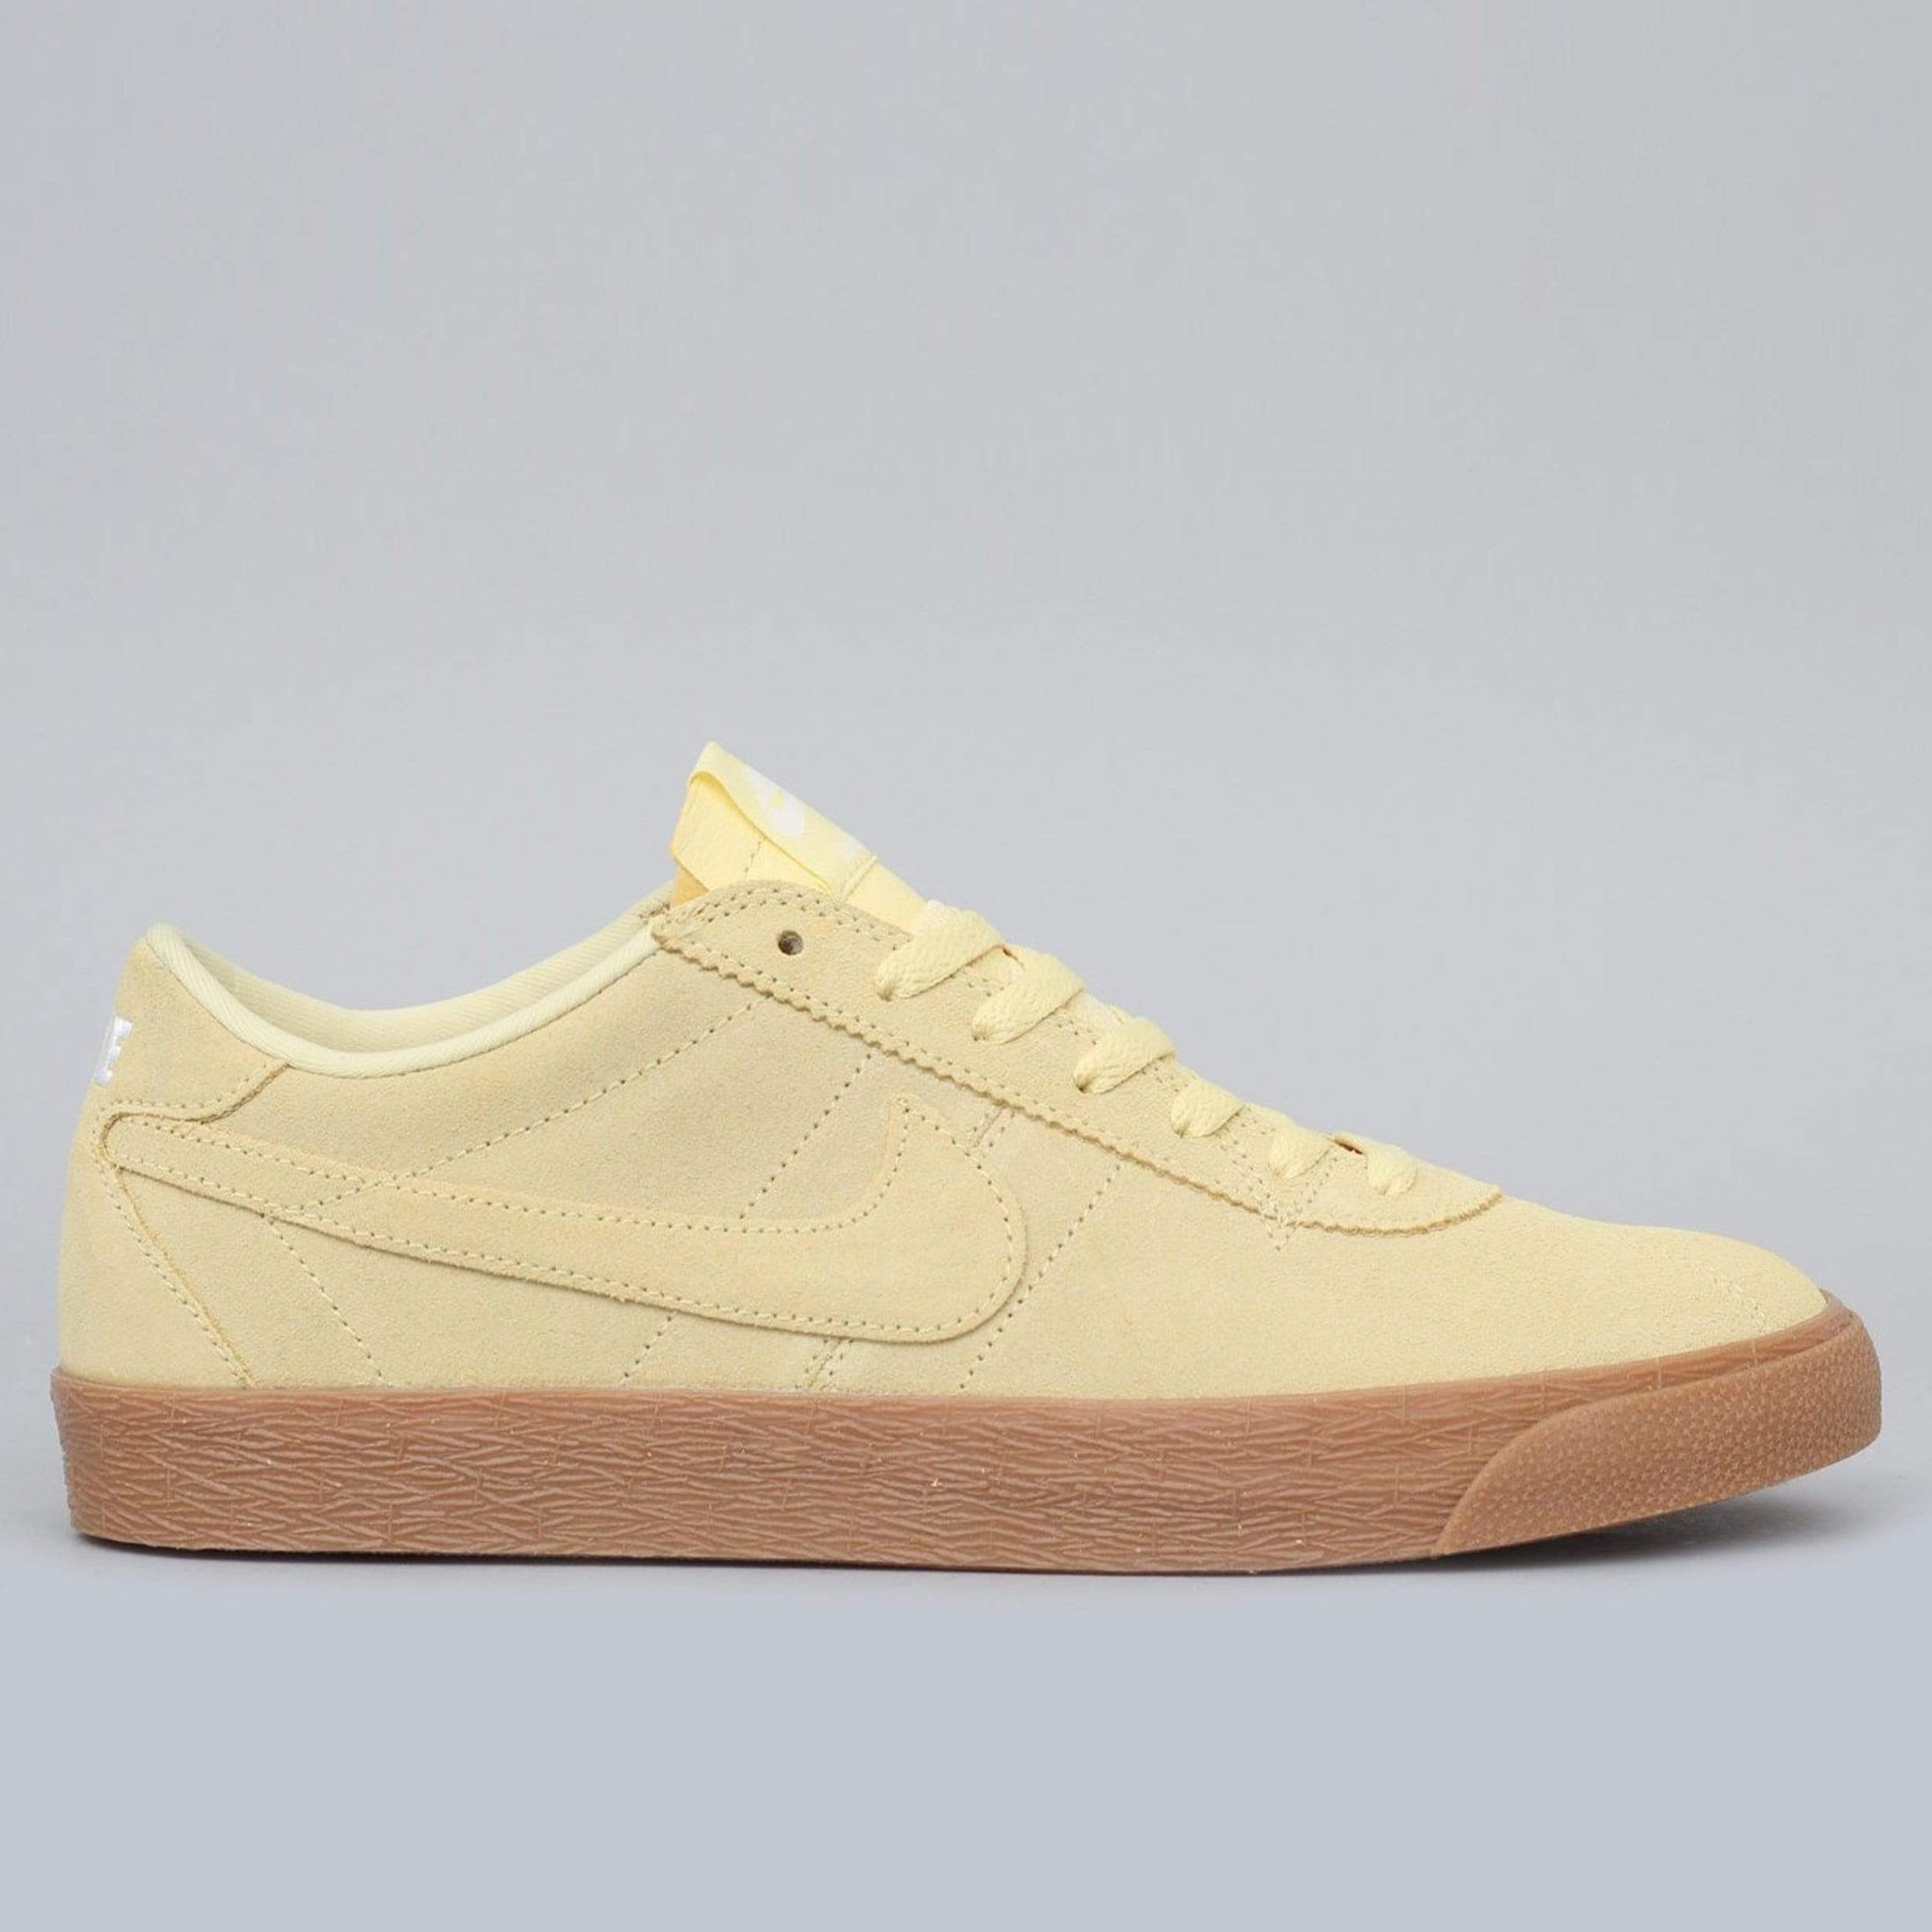 Nike SB Bruin Premium SE Shoes Lemon Wash / Lemon White